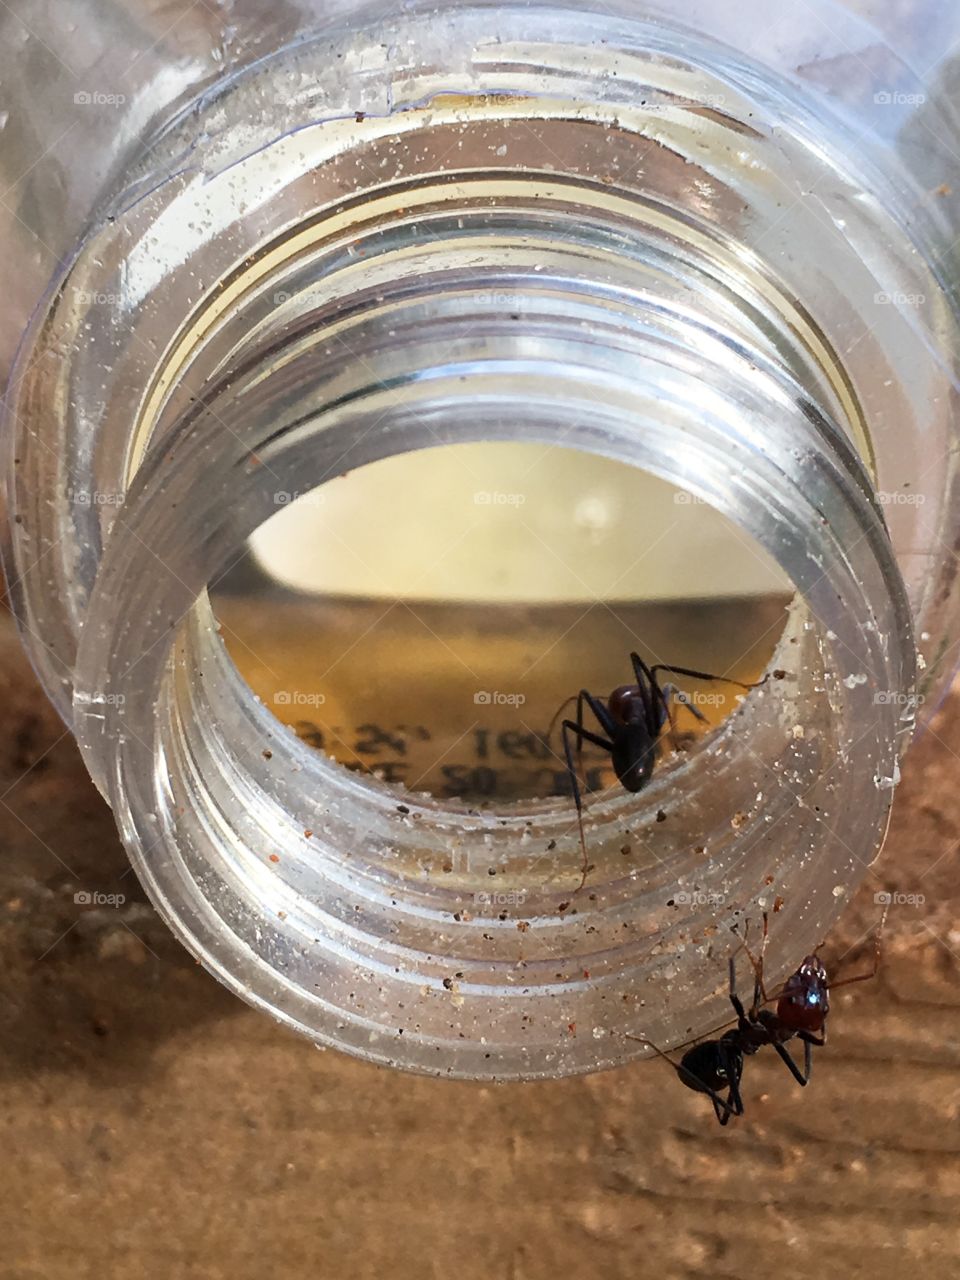 Worker ants on rim of glass jar dead ants inside